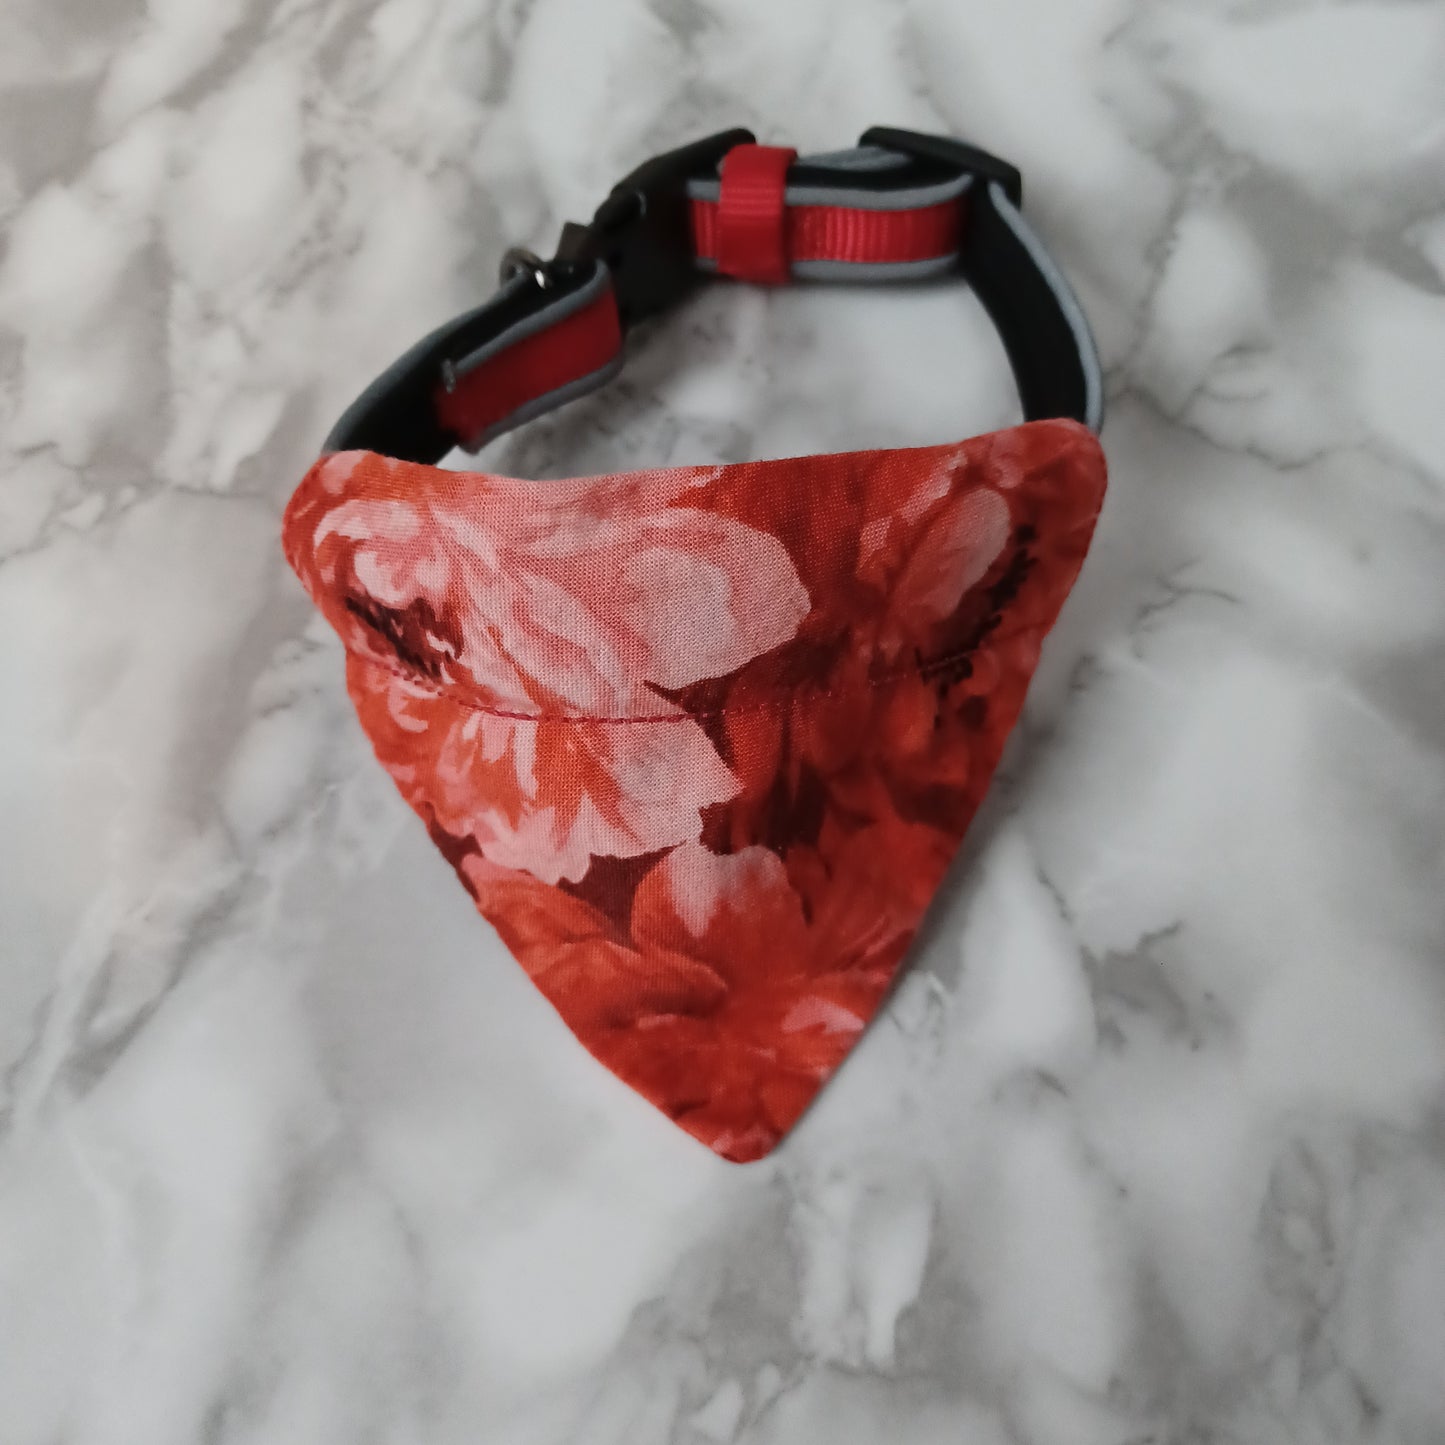 Modèle B-Chat et chien-Foulard par-dessus le collier-Fleurs rouges et roses/Bandana over the collar-Red and pink flowers